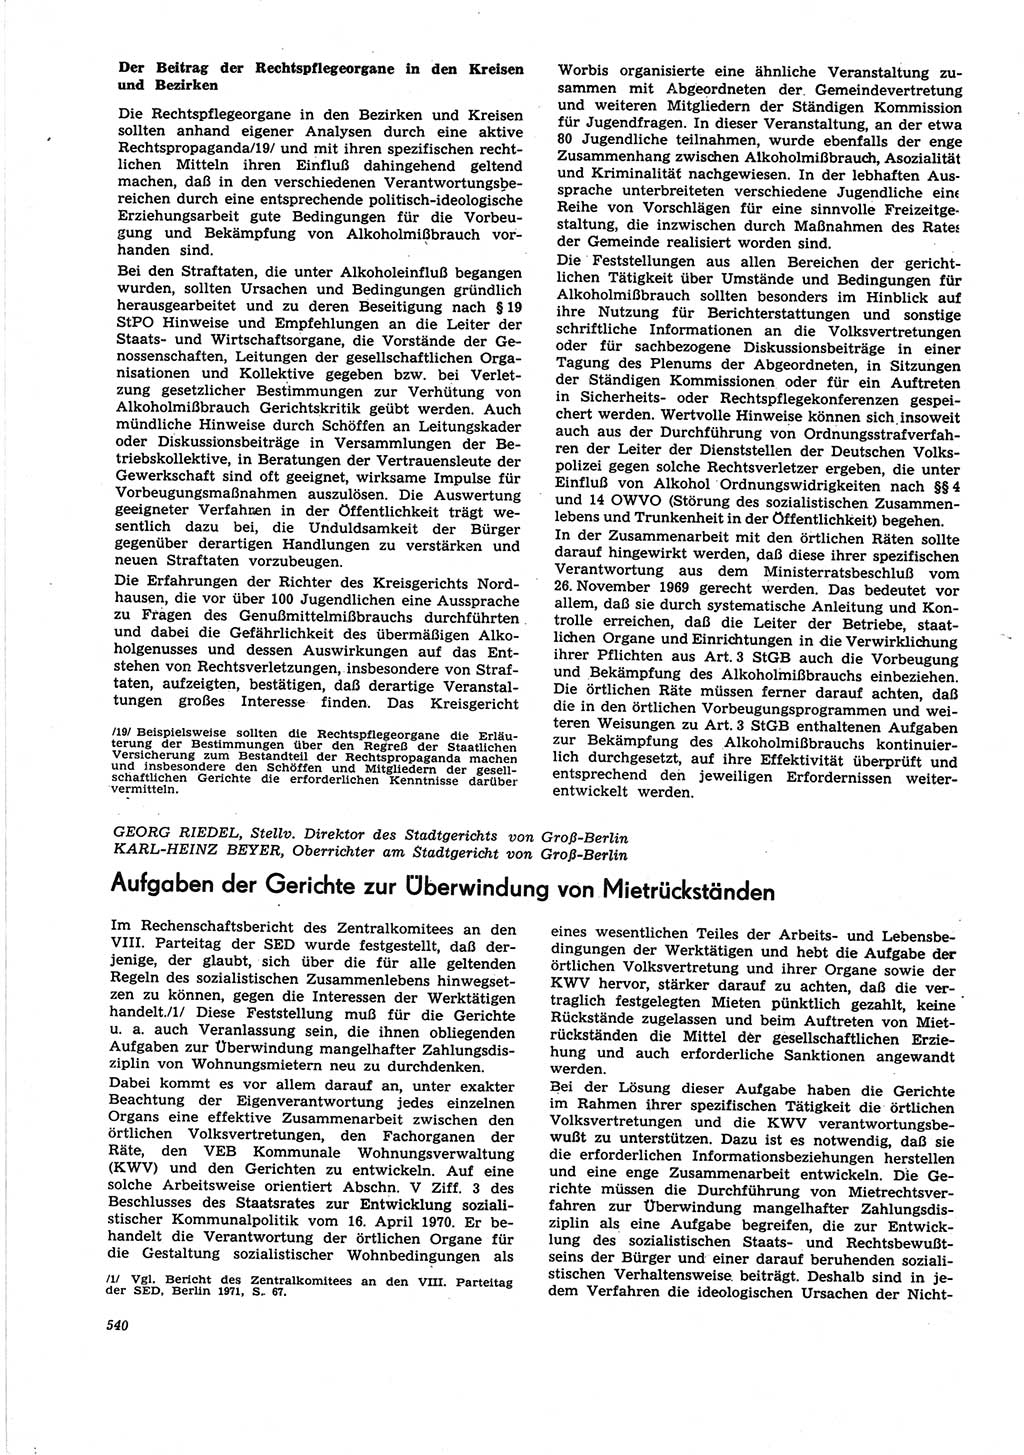 Neue Justiz (NJ), Zeitschrift für Recht und Rechtswissenschaft [Deutsche Demokratische Republik (DDR)], 25. Jahrgang 1971, Seite 540 (NJ DDR 1971, S. 540)